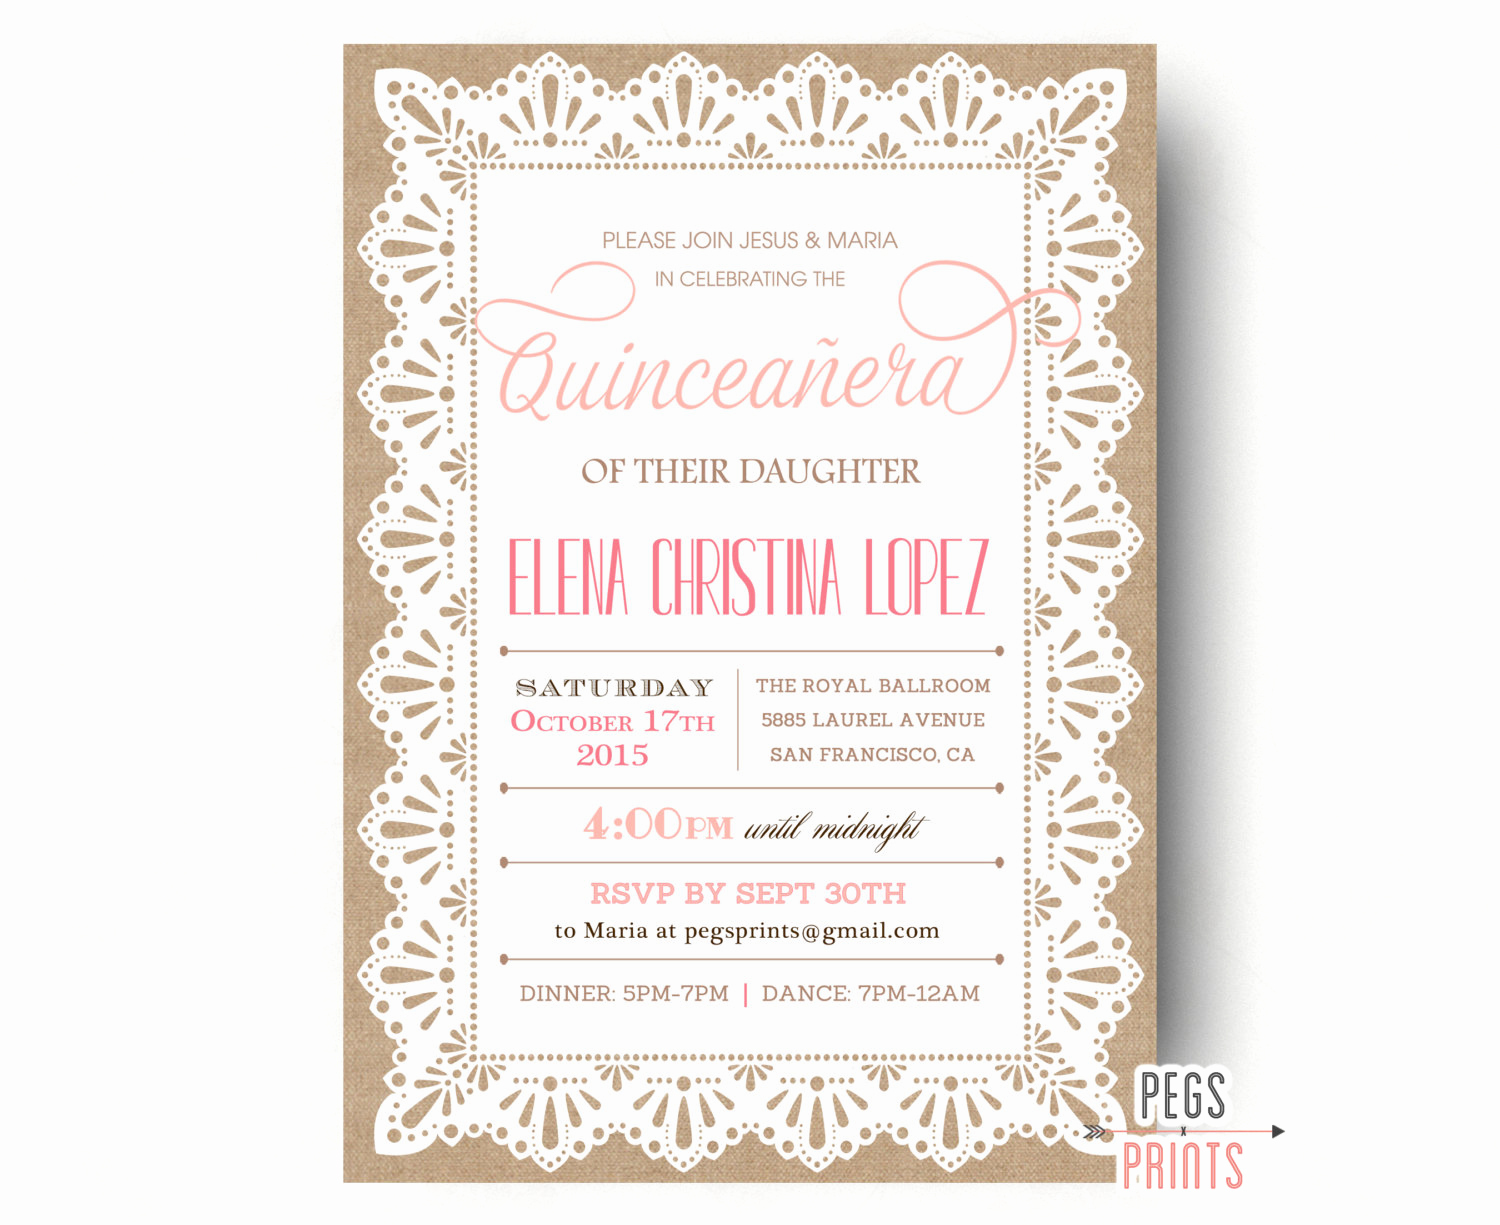 Quinceanera Invitation Templates In Spanish Elegant Burlap and Lace Quinceanera Invitation Quinceanera Invites